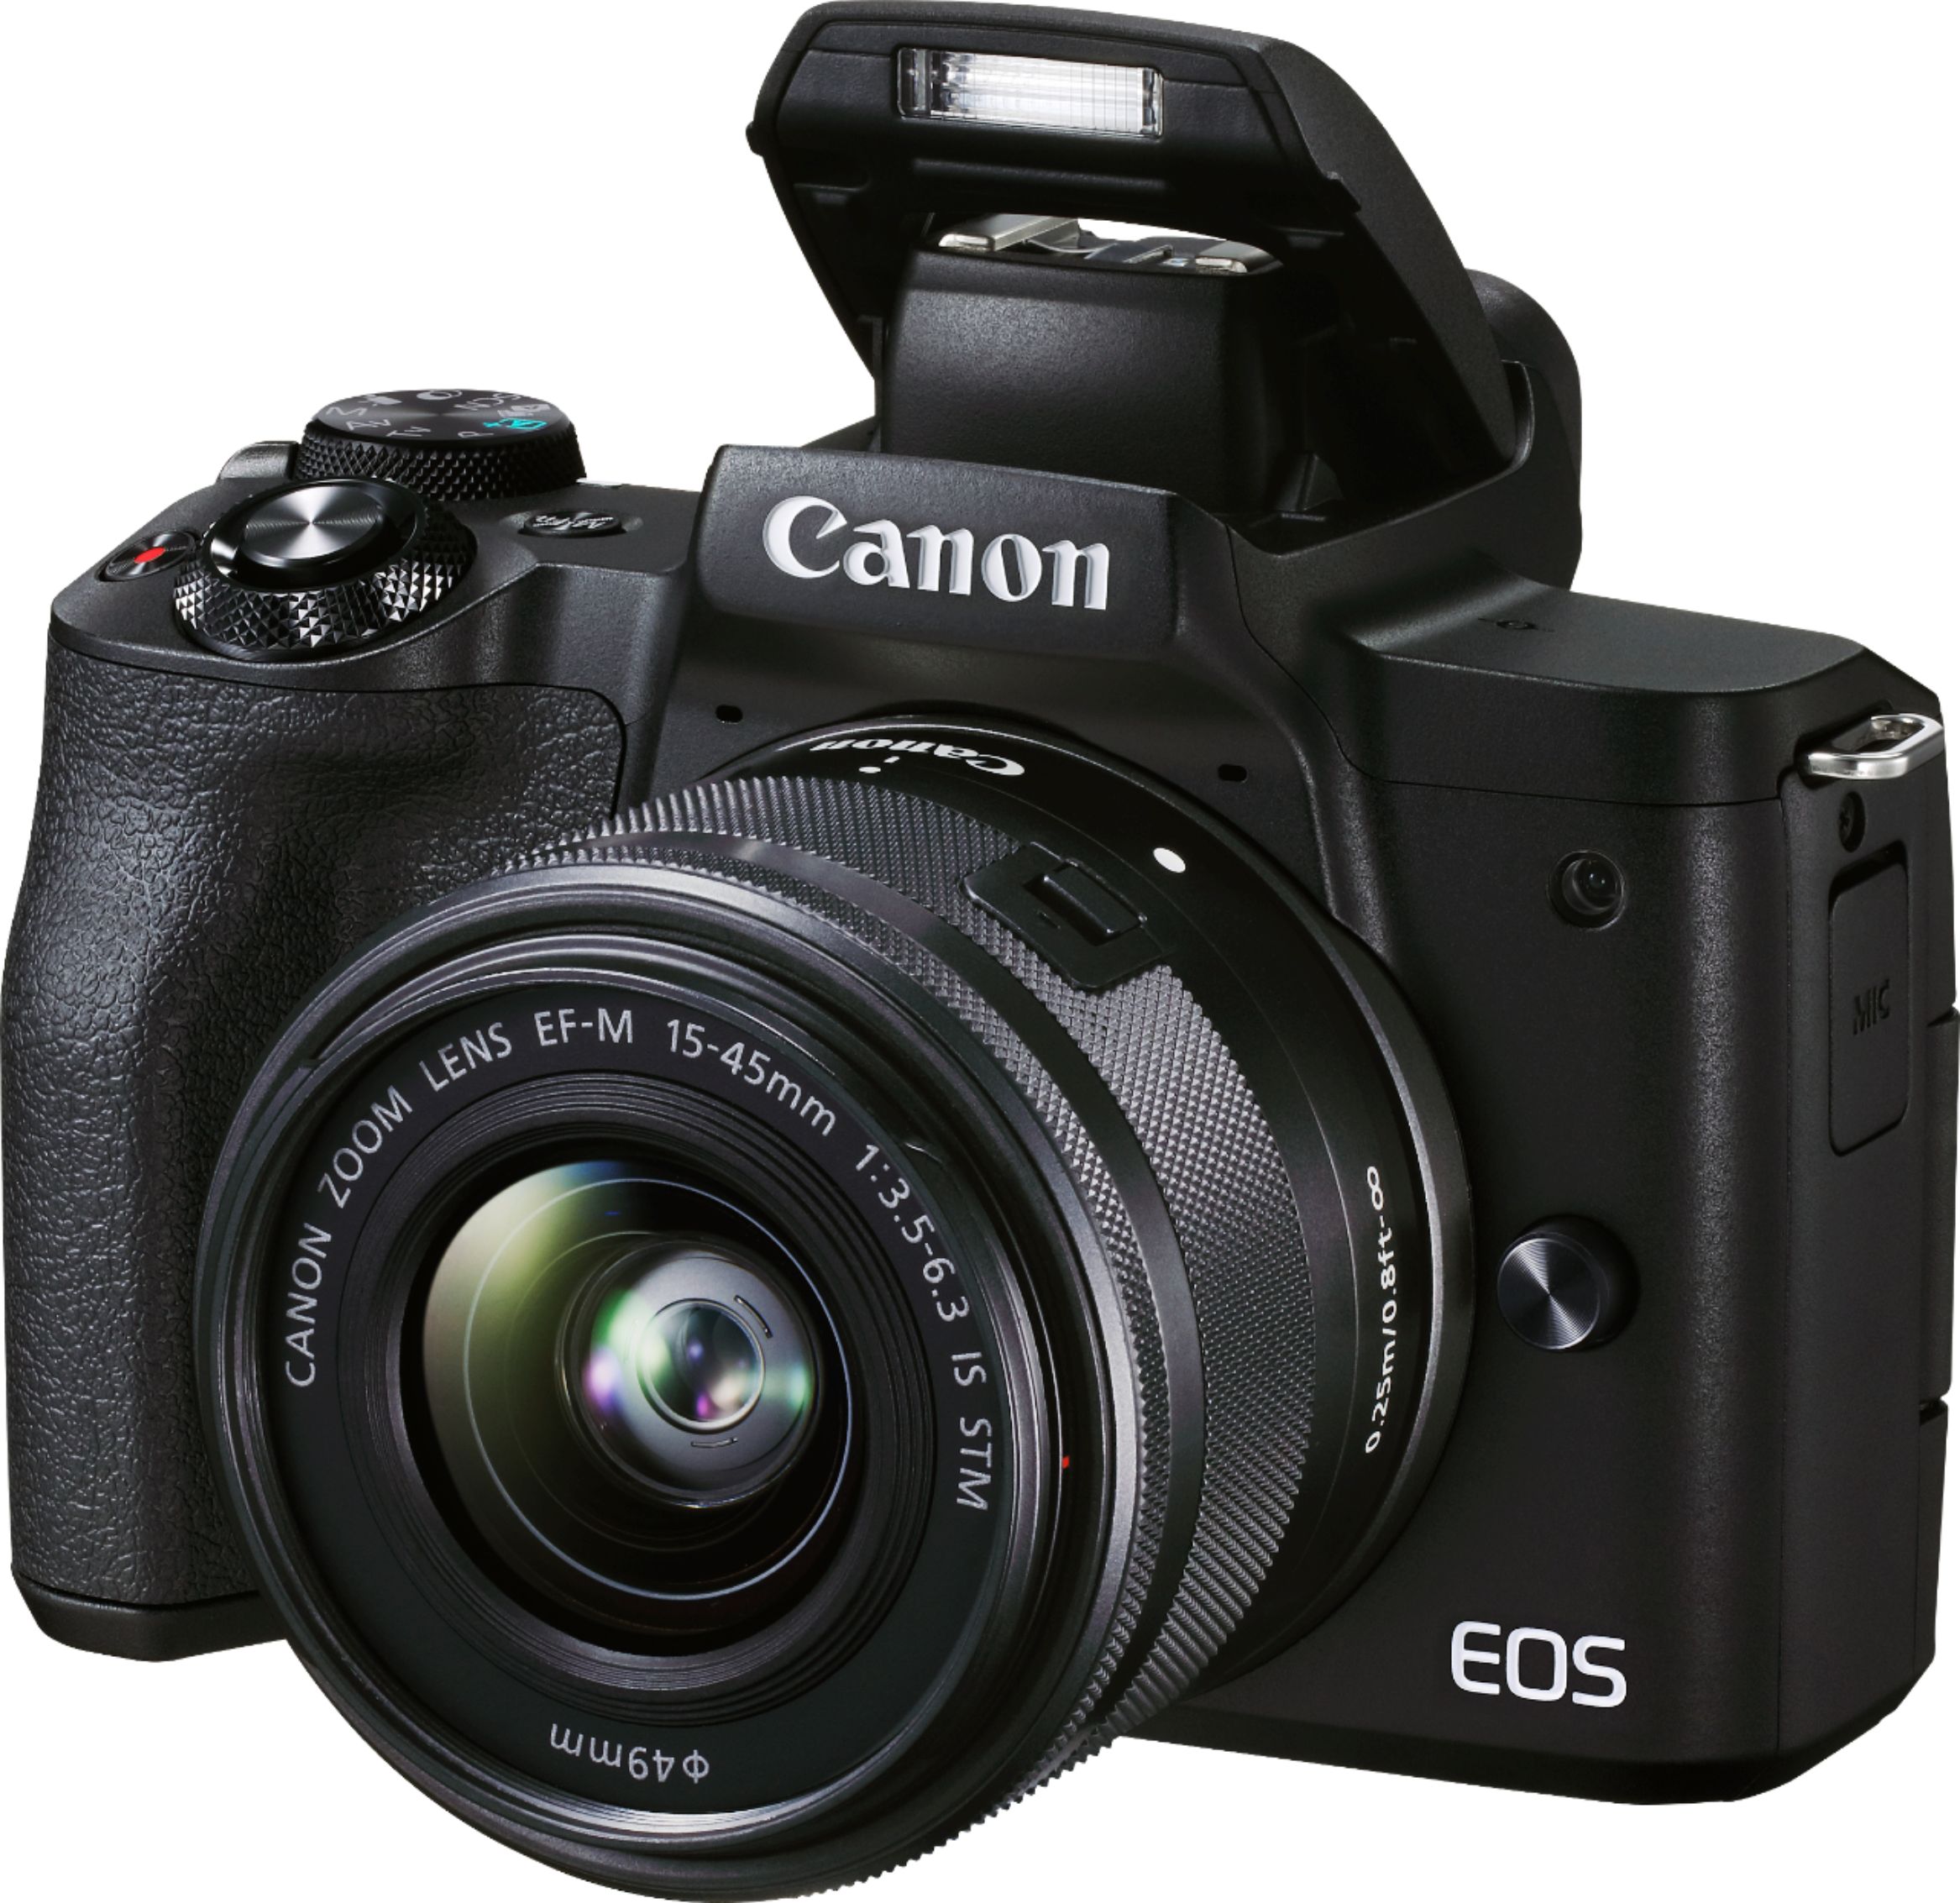 M50 Mark II Mirrorless Camera 15-45mm f/3.5-6.3 IS STM Zoom Lens Black 4728C006 - Best Buy